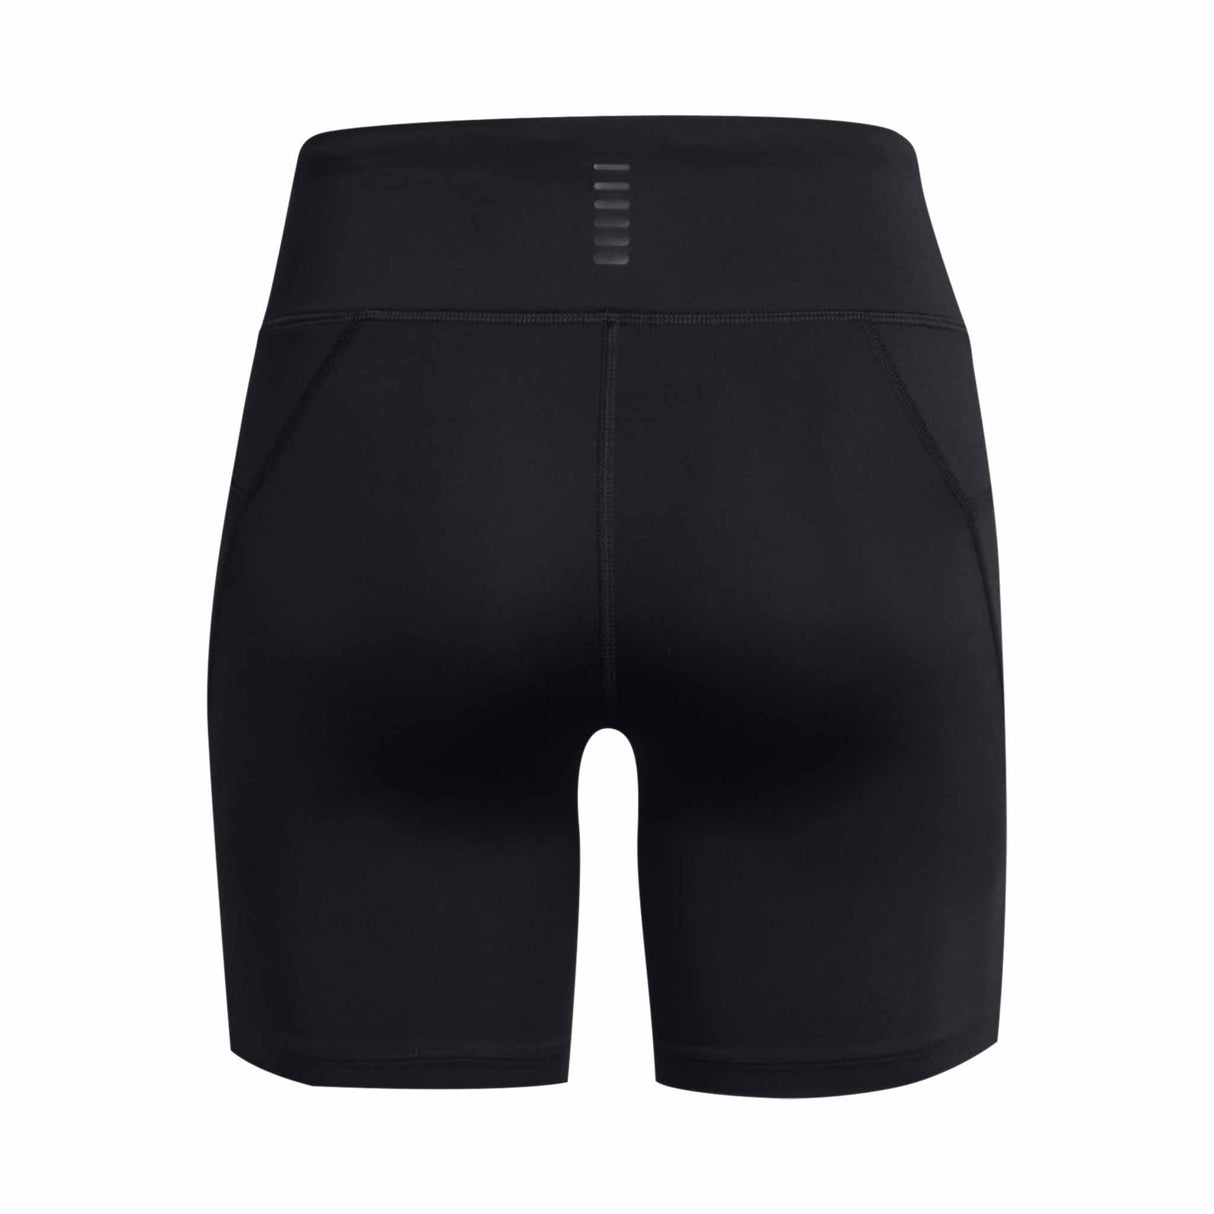 Under Armour Launch shorts cuissard 6 pouces femme dos - black / reflective